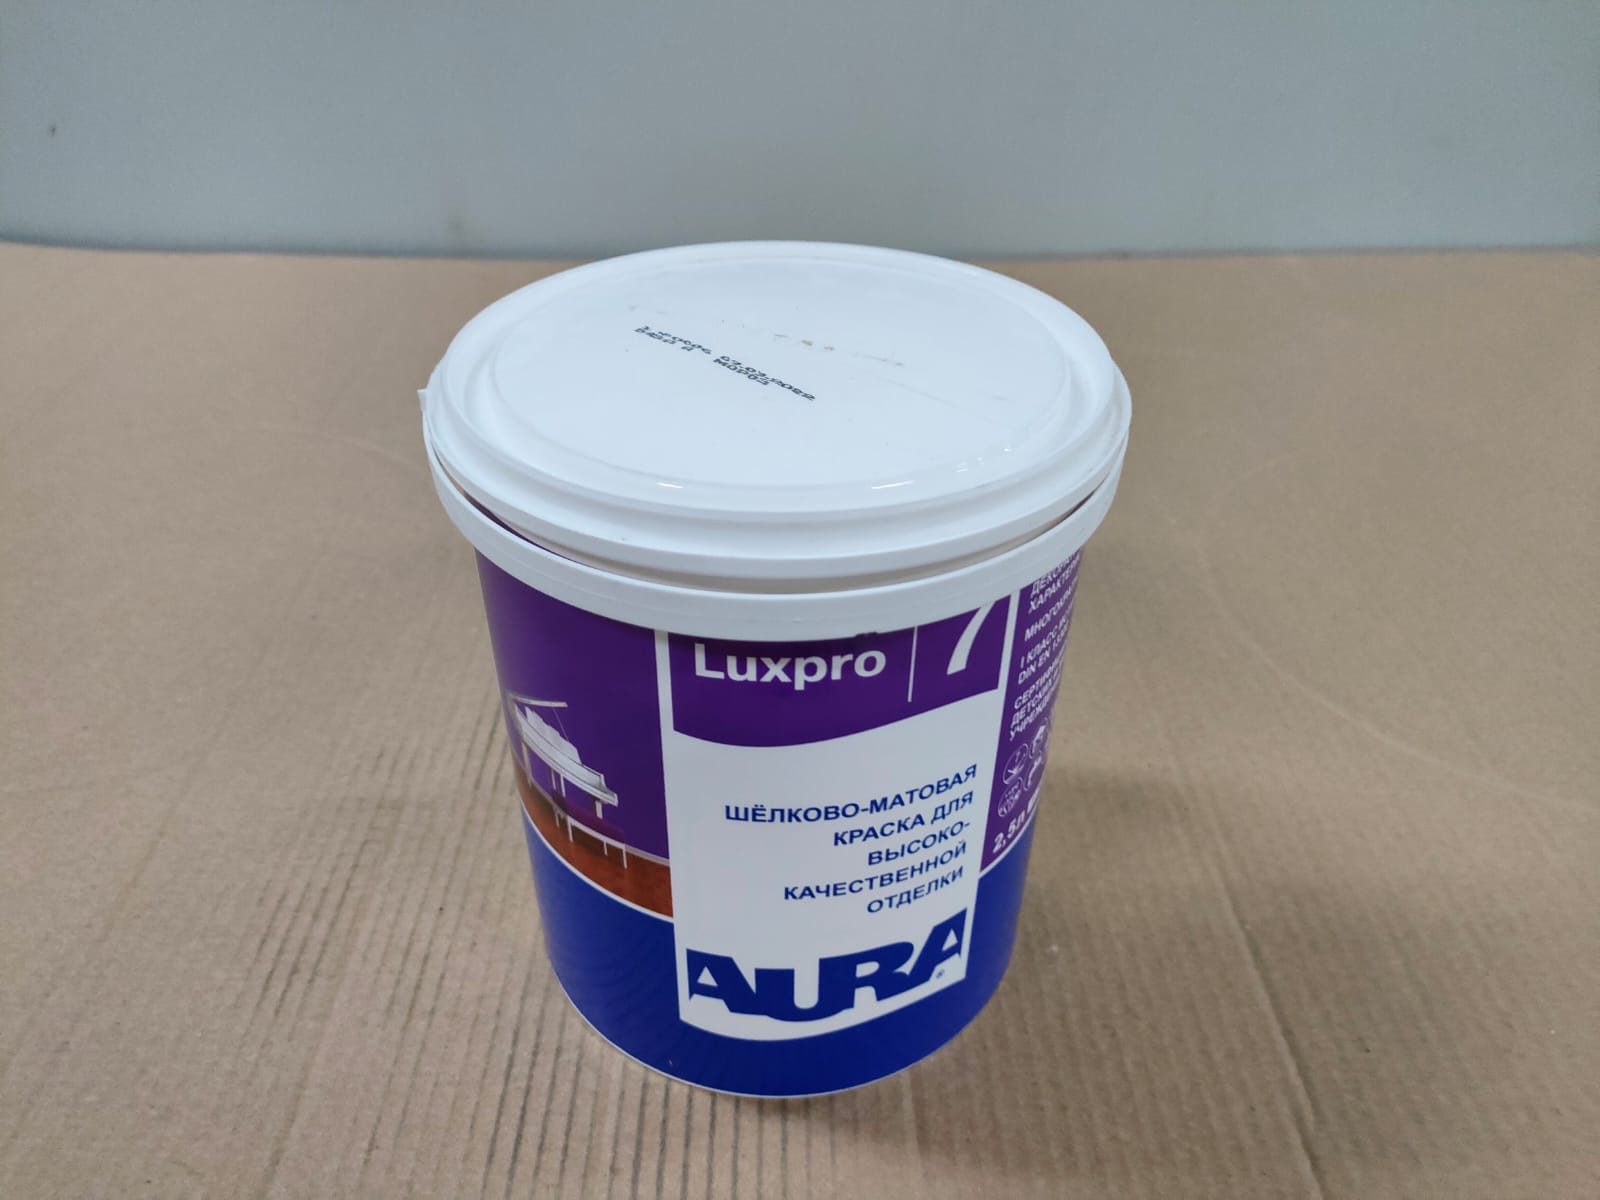 Краска шелково - матовая для внутренней отделки AURA Luxpro 7 / АУРА Люкспро 7 2,5л (база А)